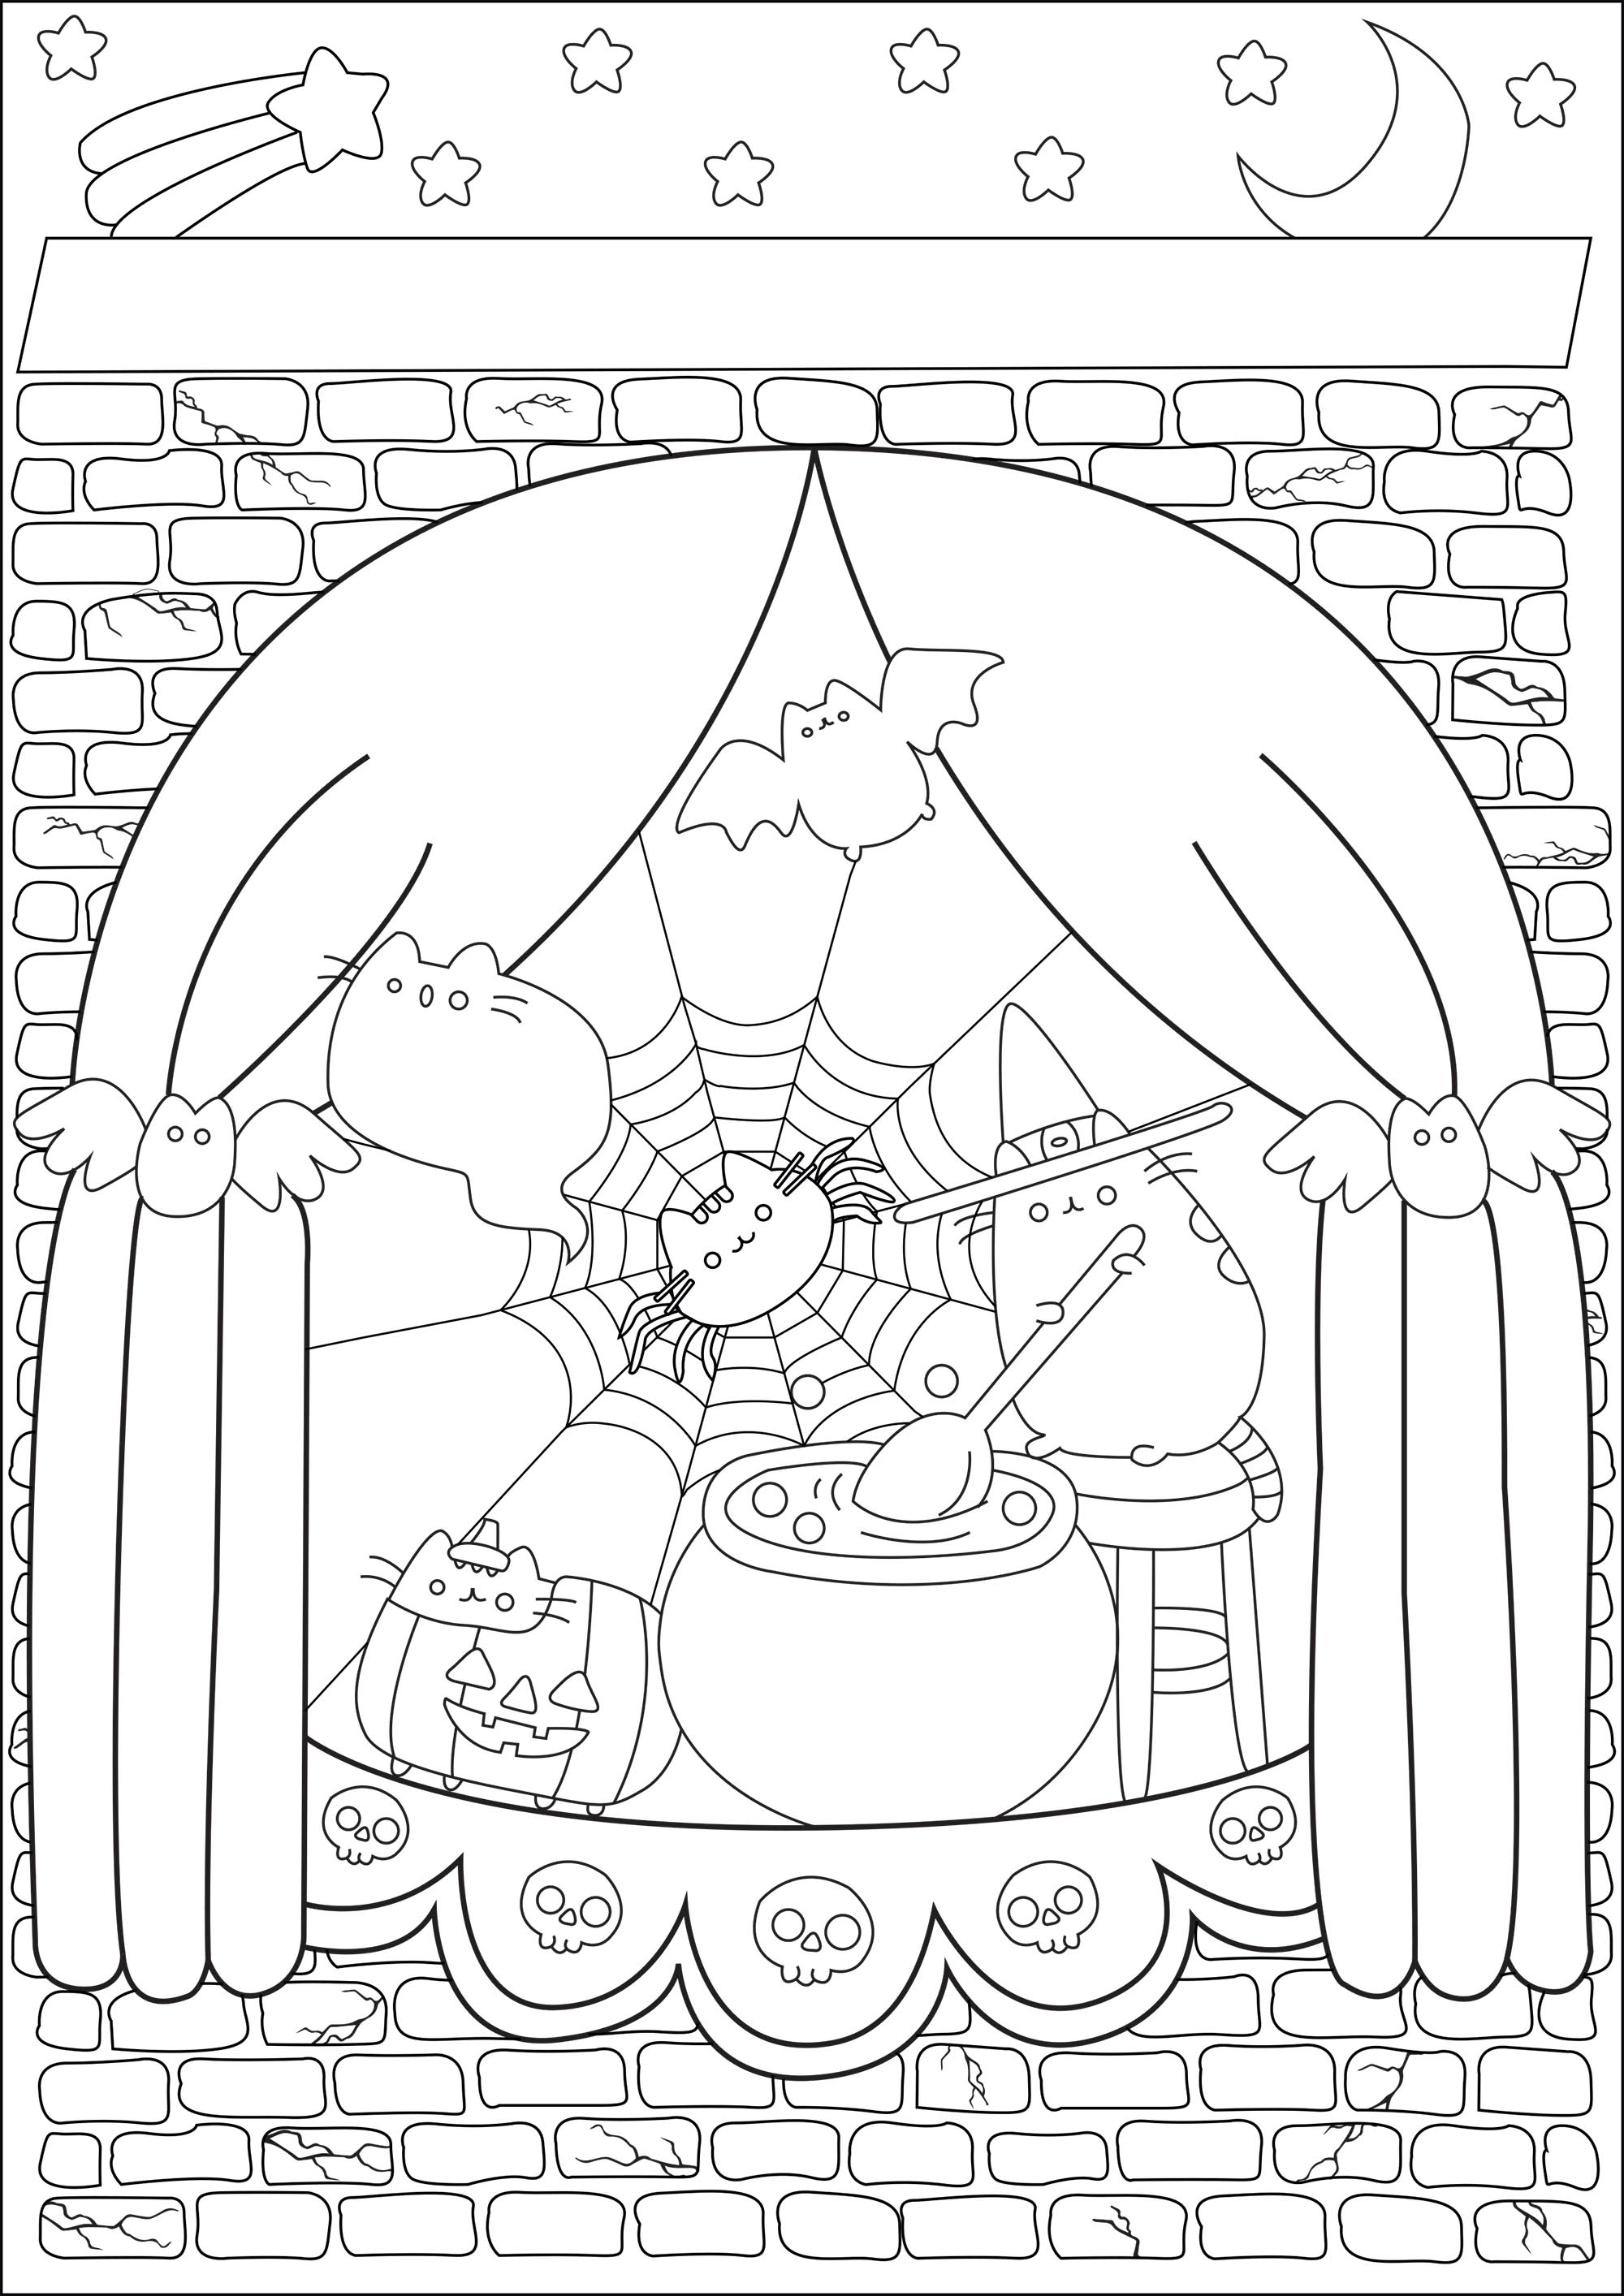 La bonita bruja Pusheen en su mansión preparando una poción mágica para Halloween. El estilo Pusheen aplicado a una página para colorear con temática de Halloween, o cuando la sencillez se une a lo espeluznante...